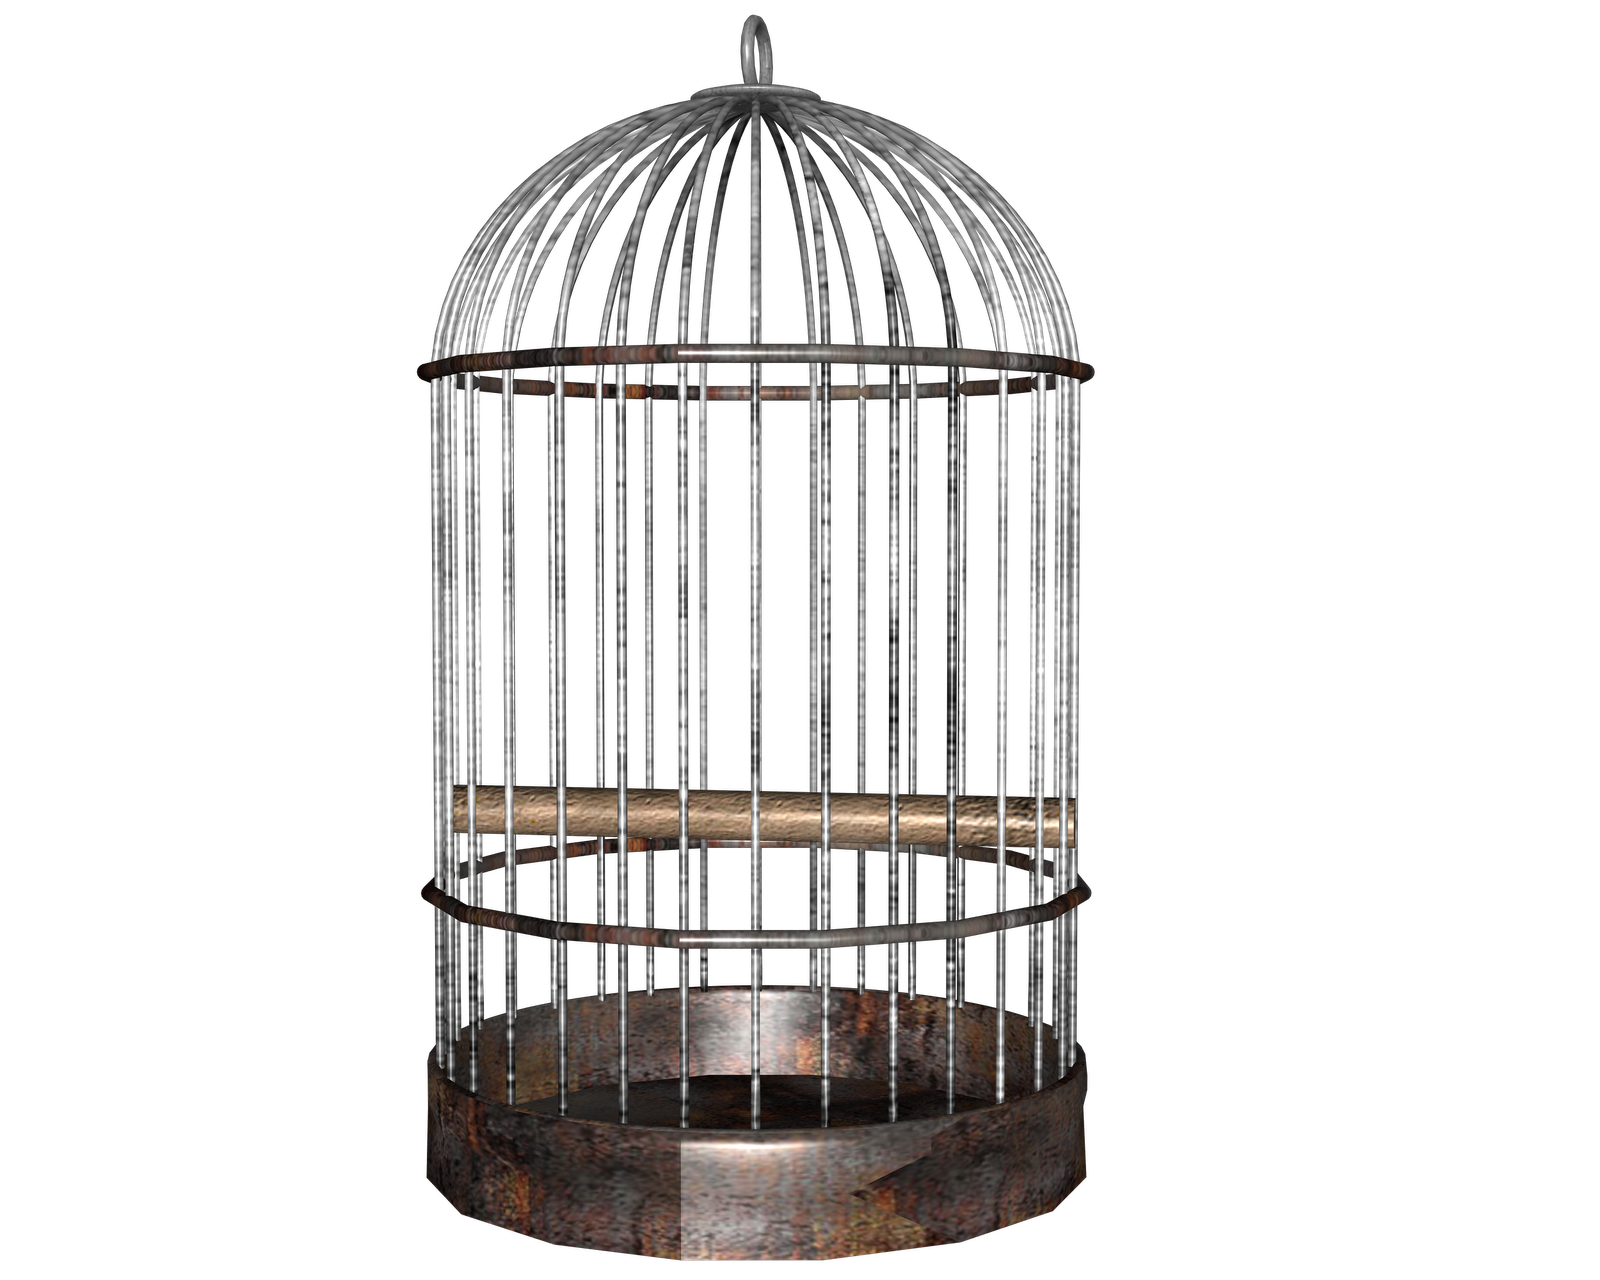 Albert S Sermon Illustrations  The Empty Bird Cage